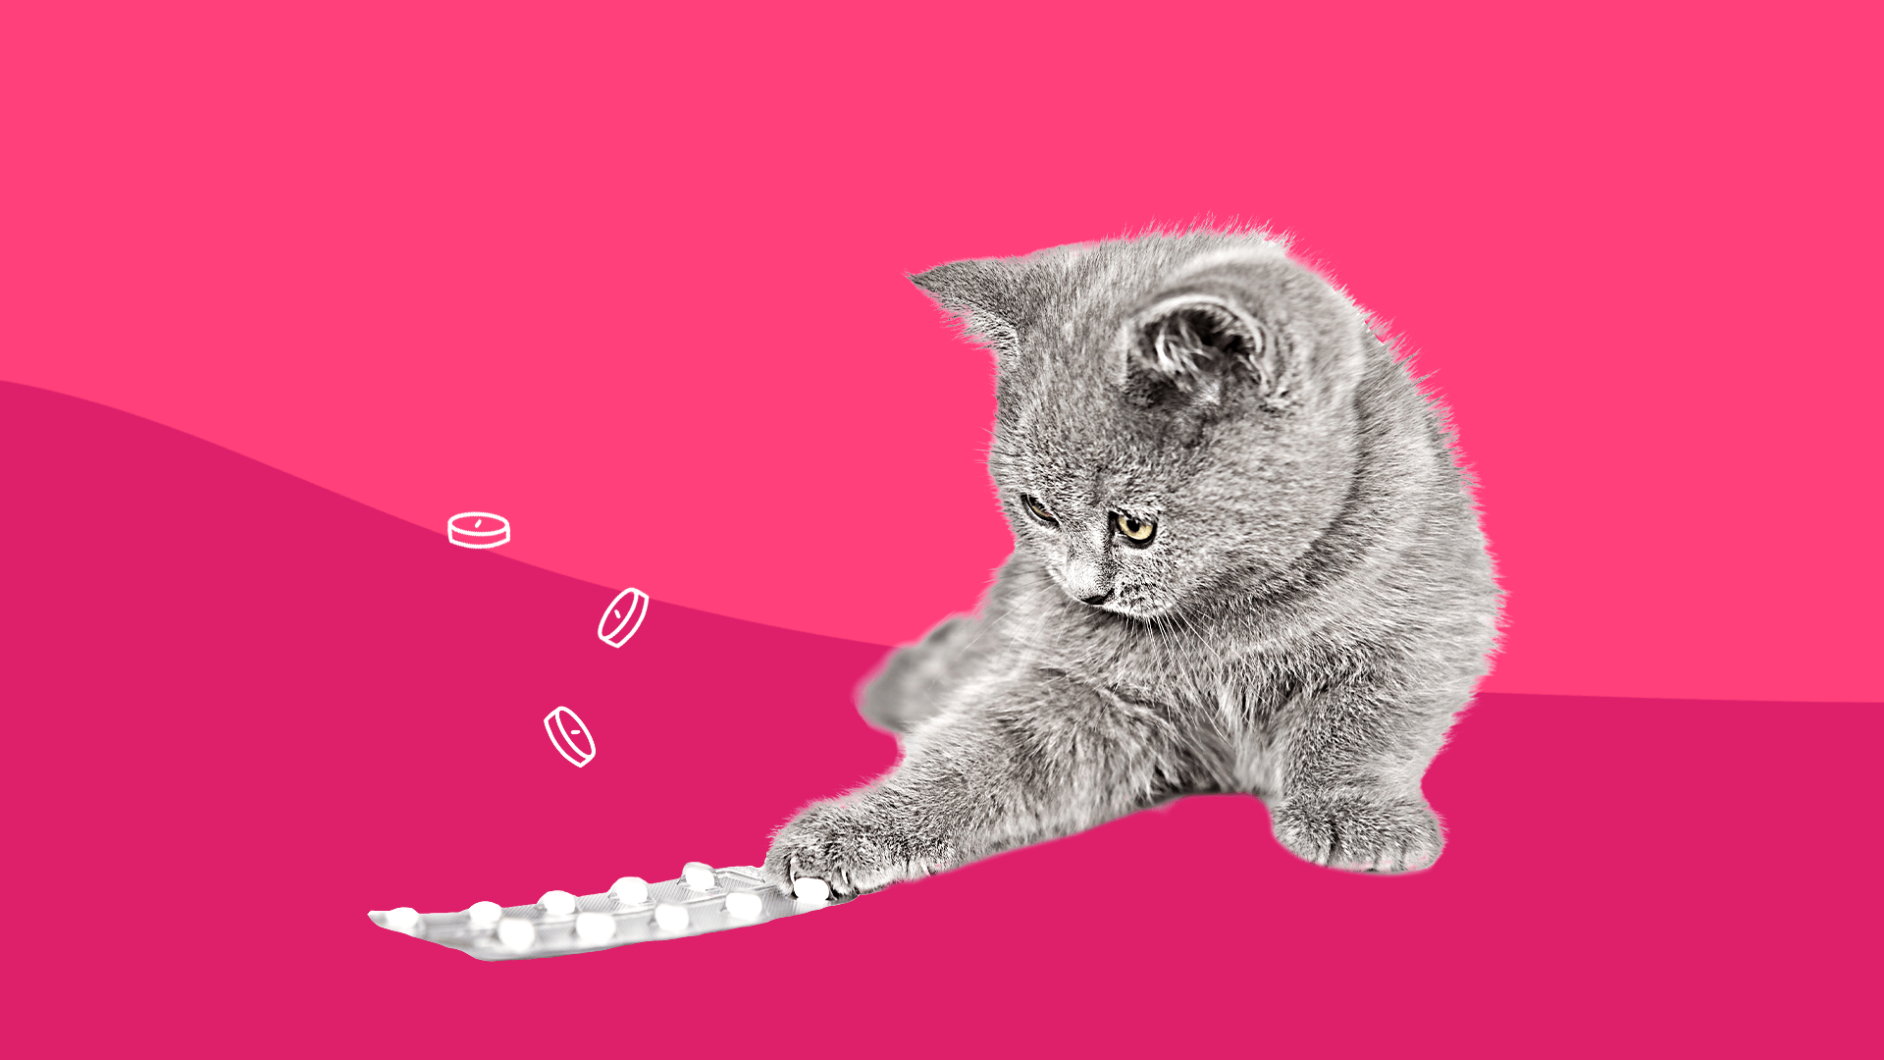 A cat with pills represents pet antibiotics